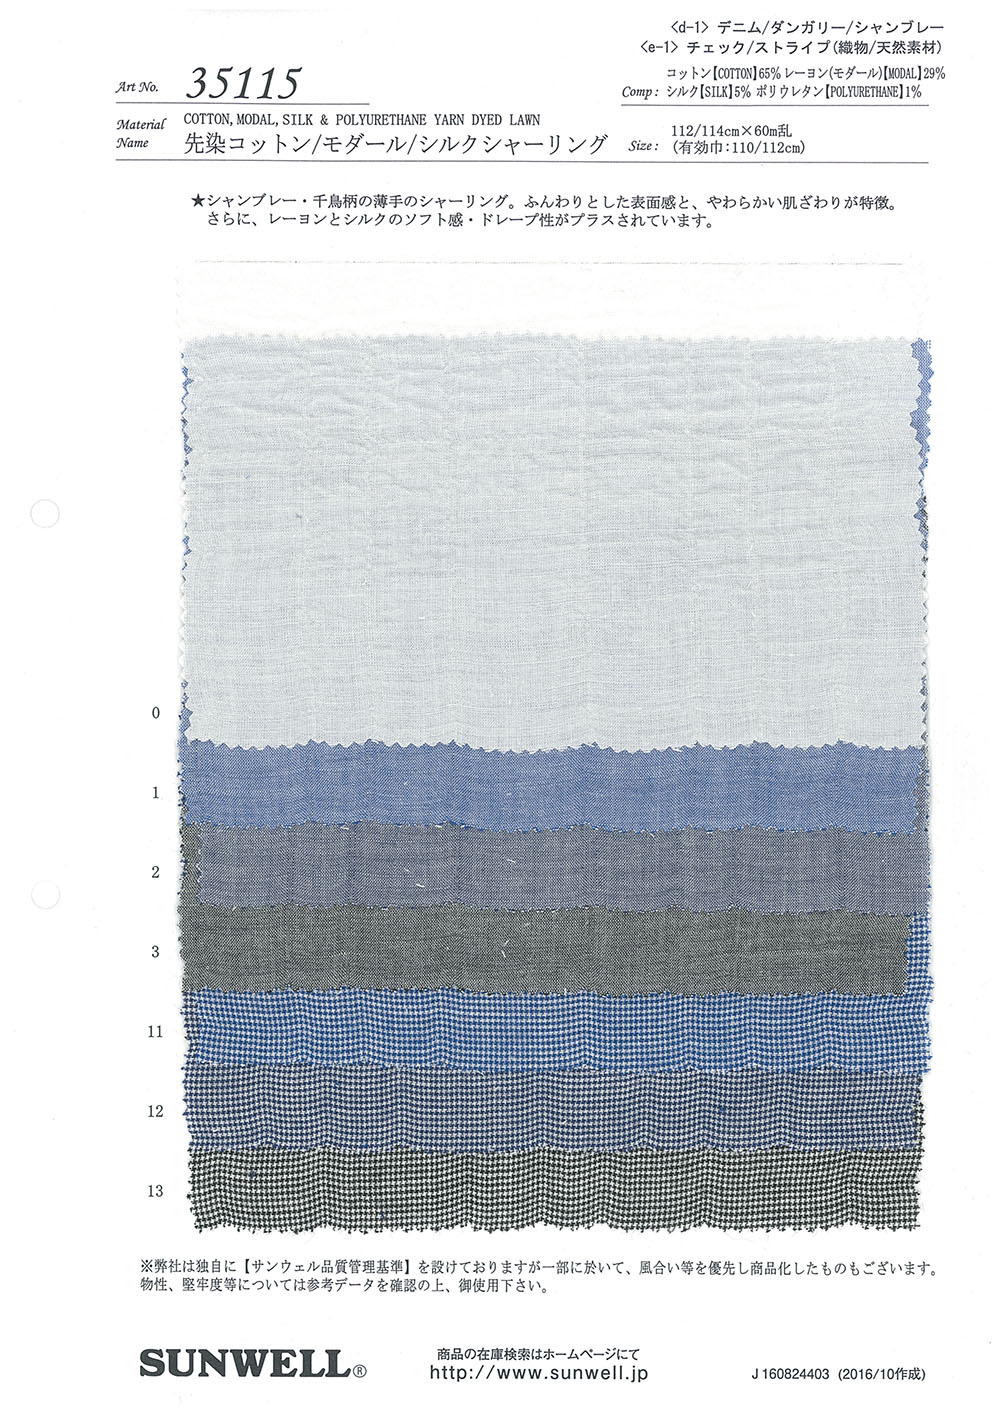 35115 Fruncido De Algodón/rayón/seda Teñido En Hilo[Fabrica Textil] SUNWELL